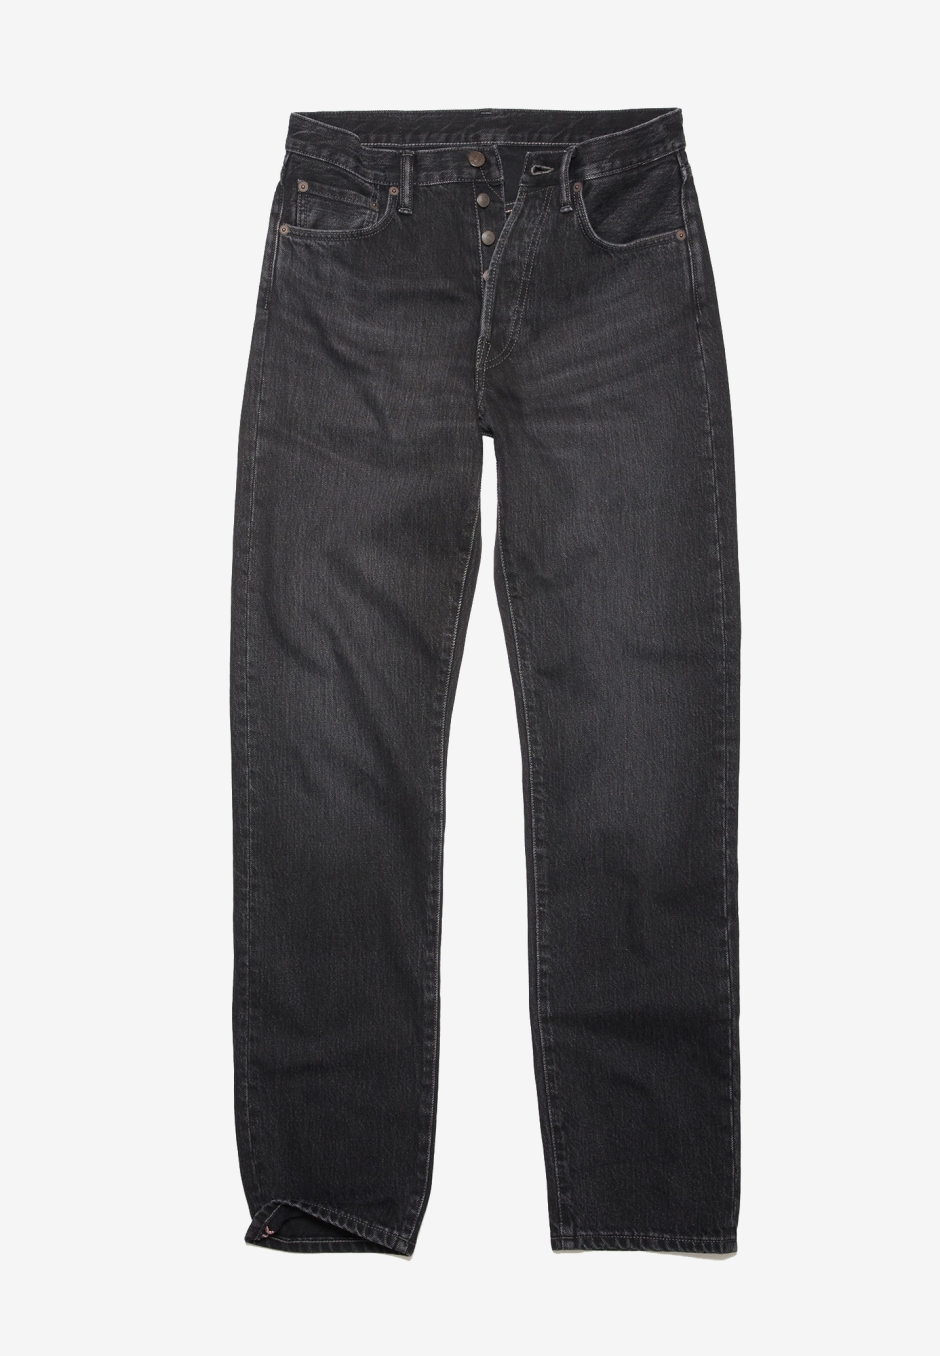 Acne Studios Regular Fit Jeans 1996 Vintage Black